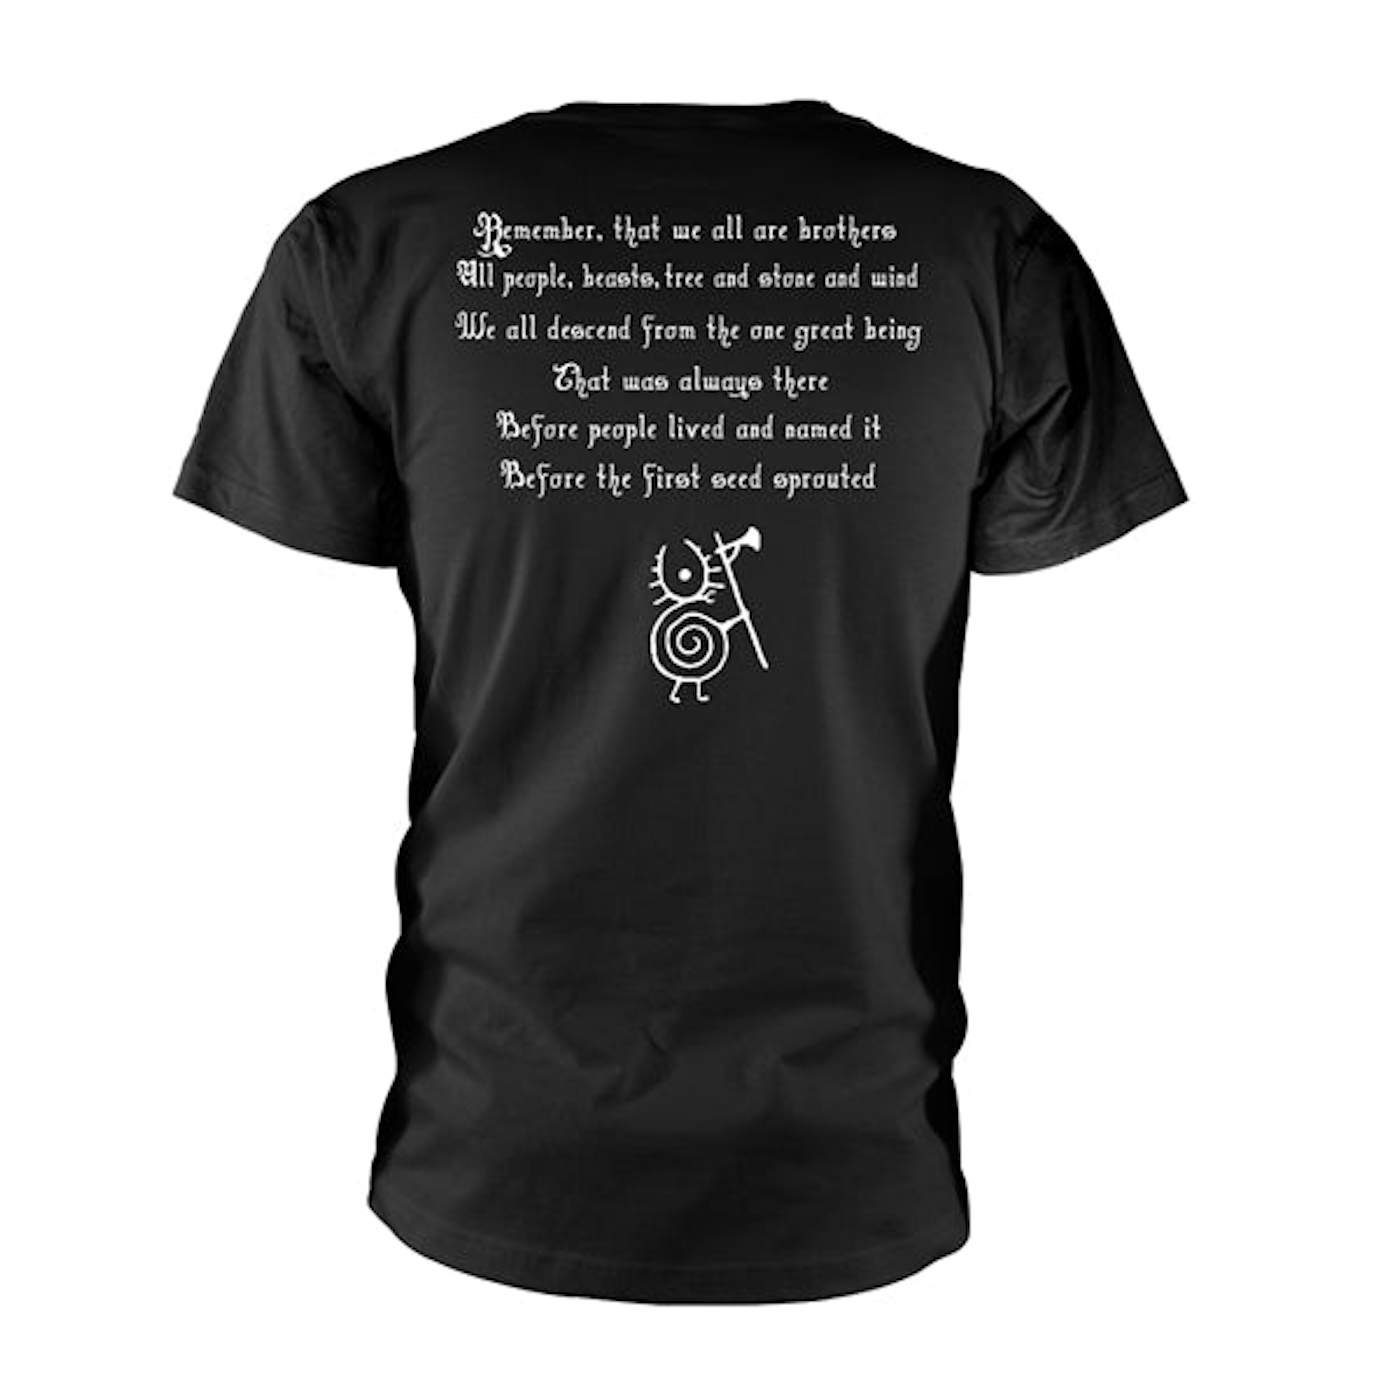 Heilung T Shirt - Remember